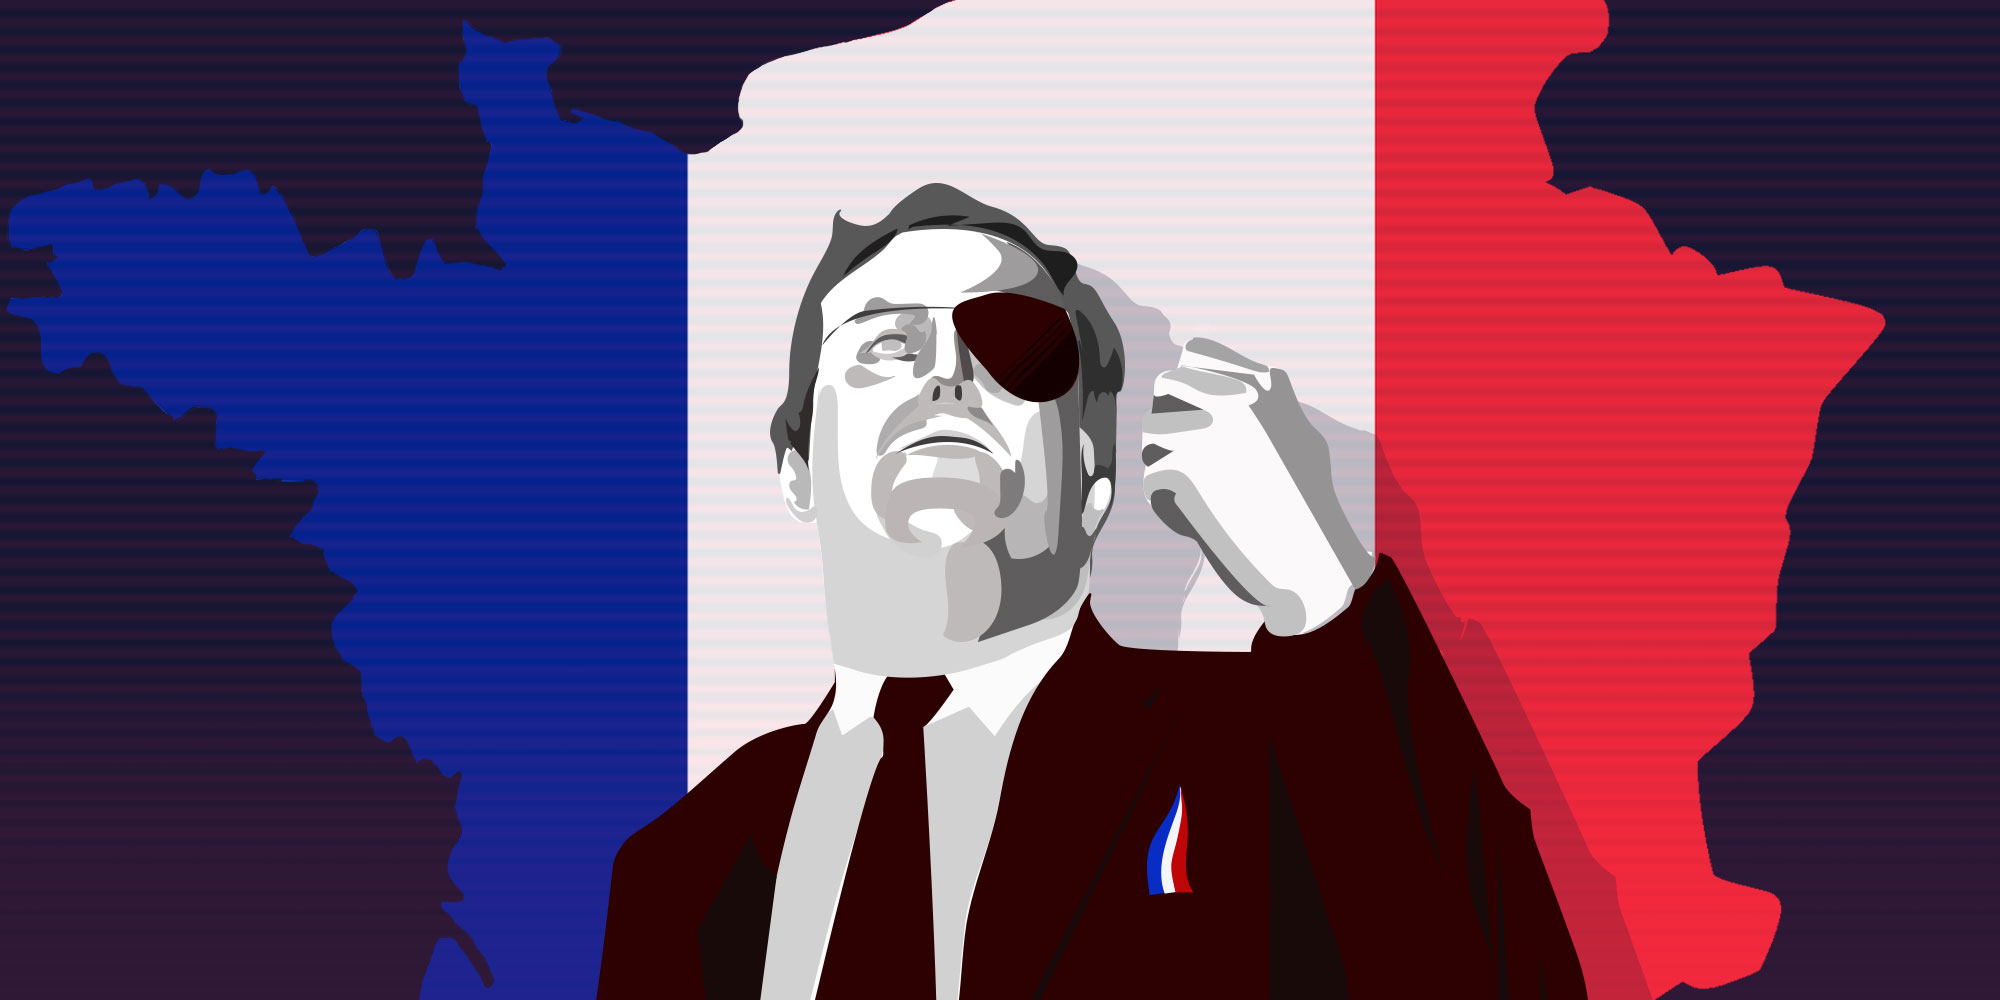 La historia del Frente Nacional en Francia y la familia Le Pen